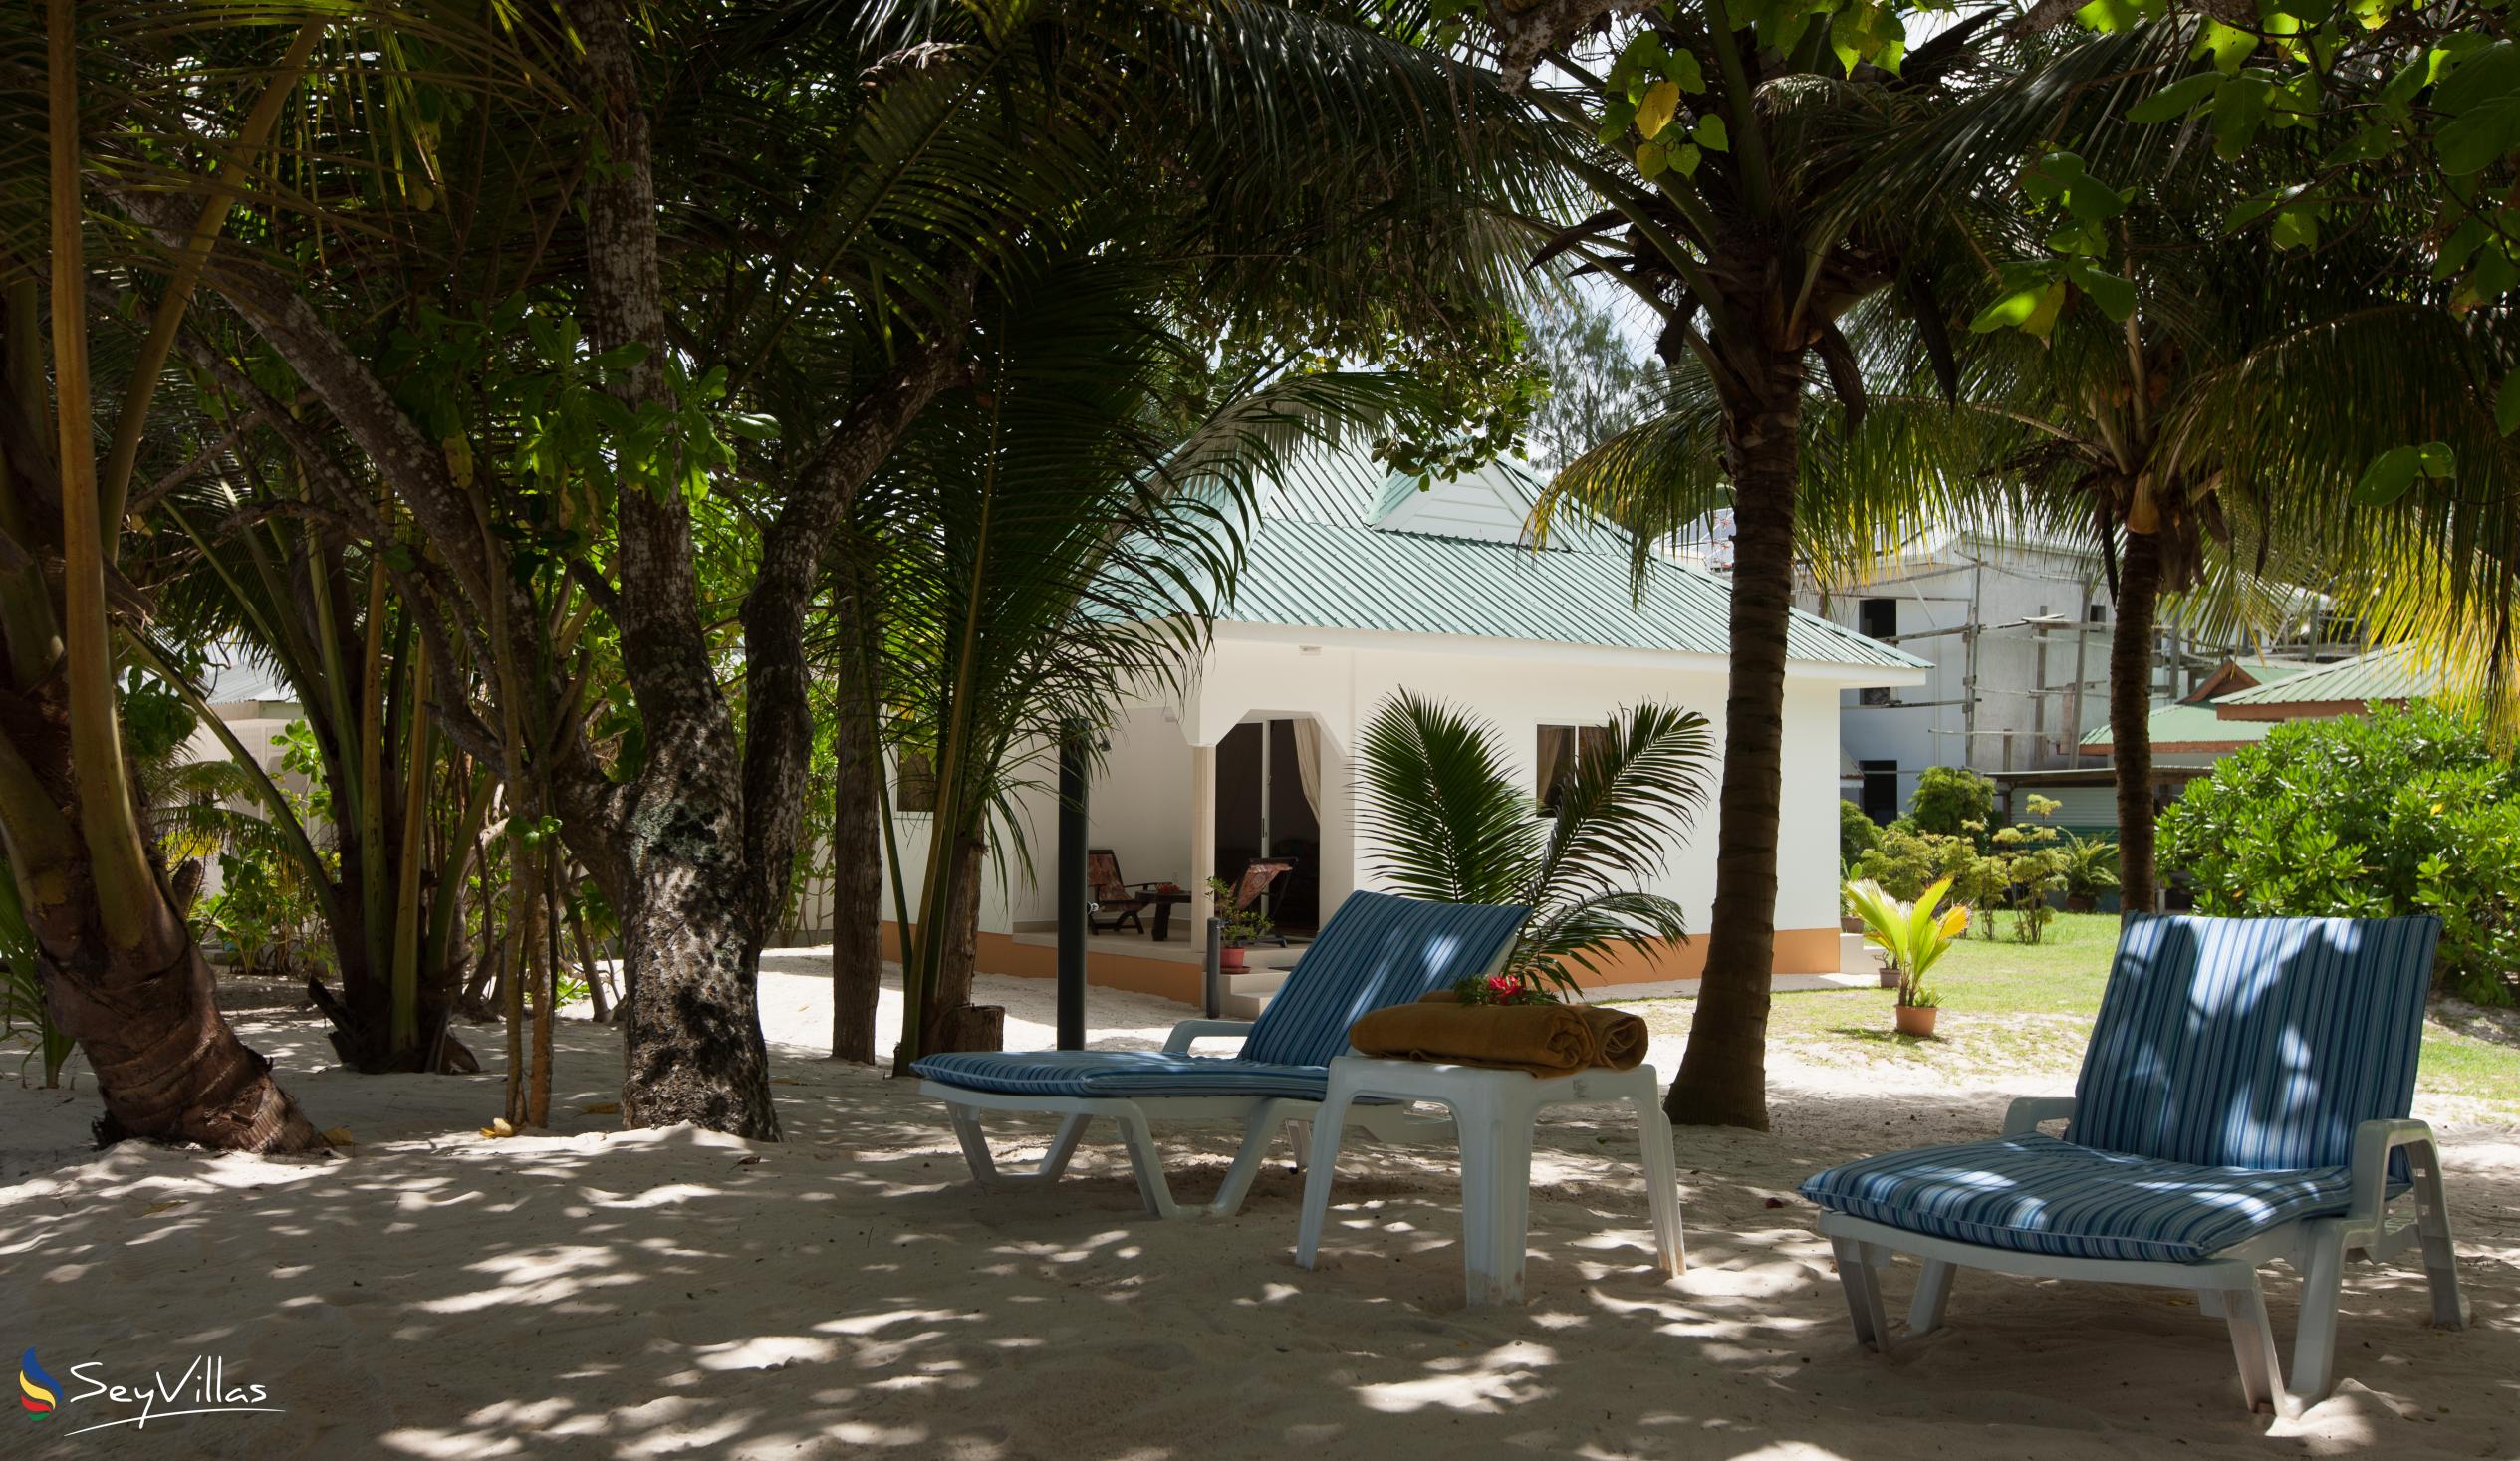 Foto 10: Villa Admiral - Aussenbereich - Praslin (Seychellen)